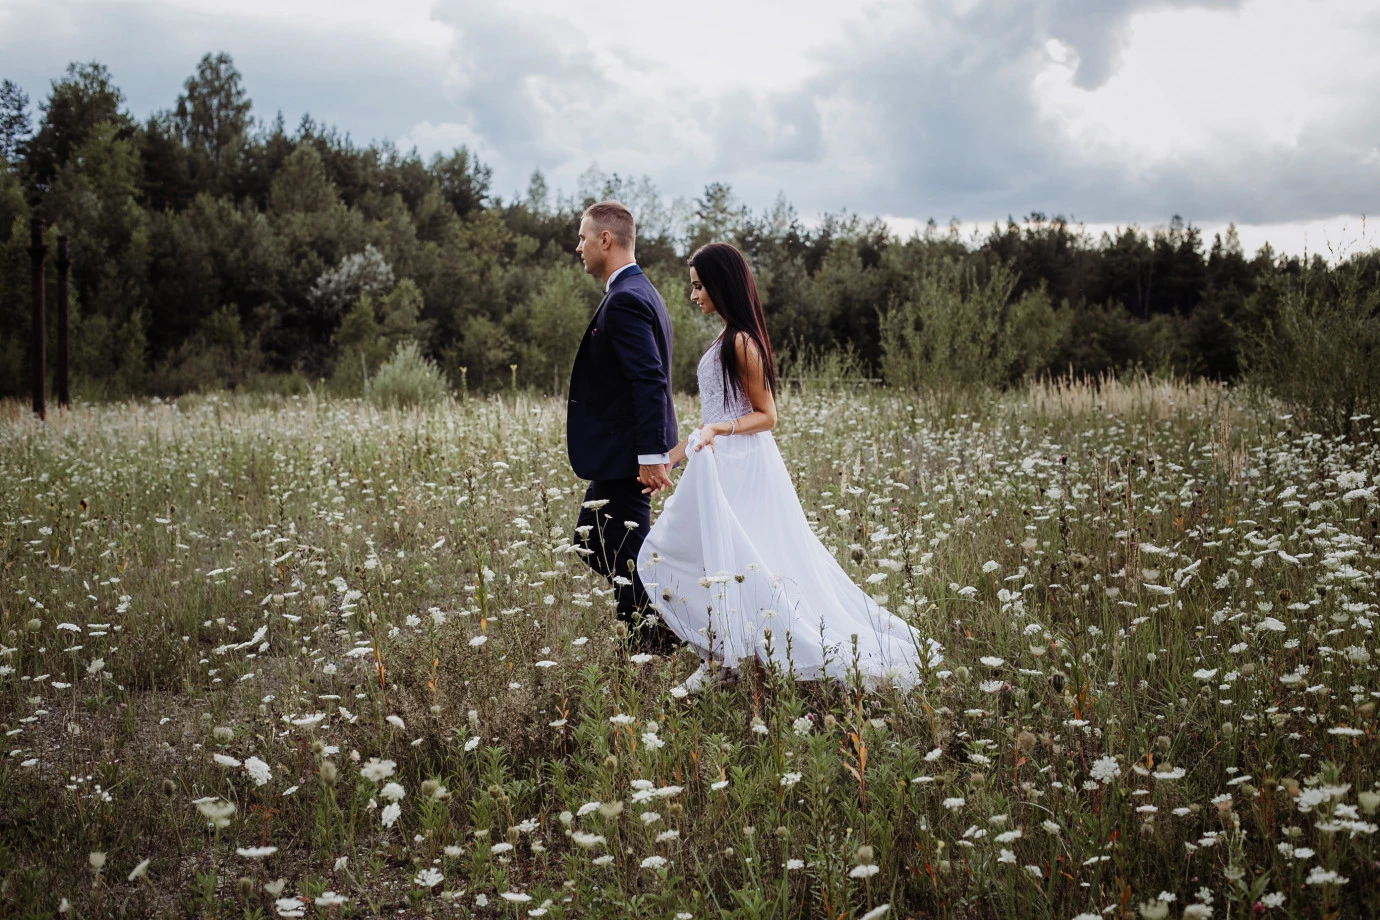 zdjęcia krakow fotograf kinga-chybiorz portfolio zdjecia slubne inspiracje wesele plener slubny sesja slubna